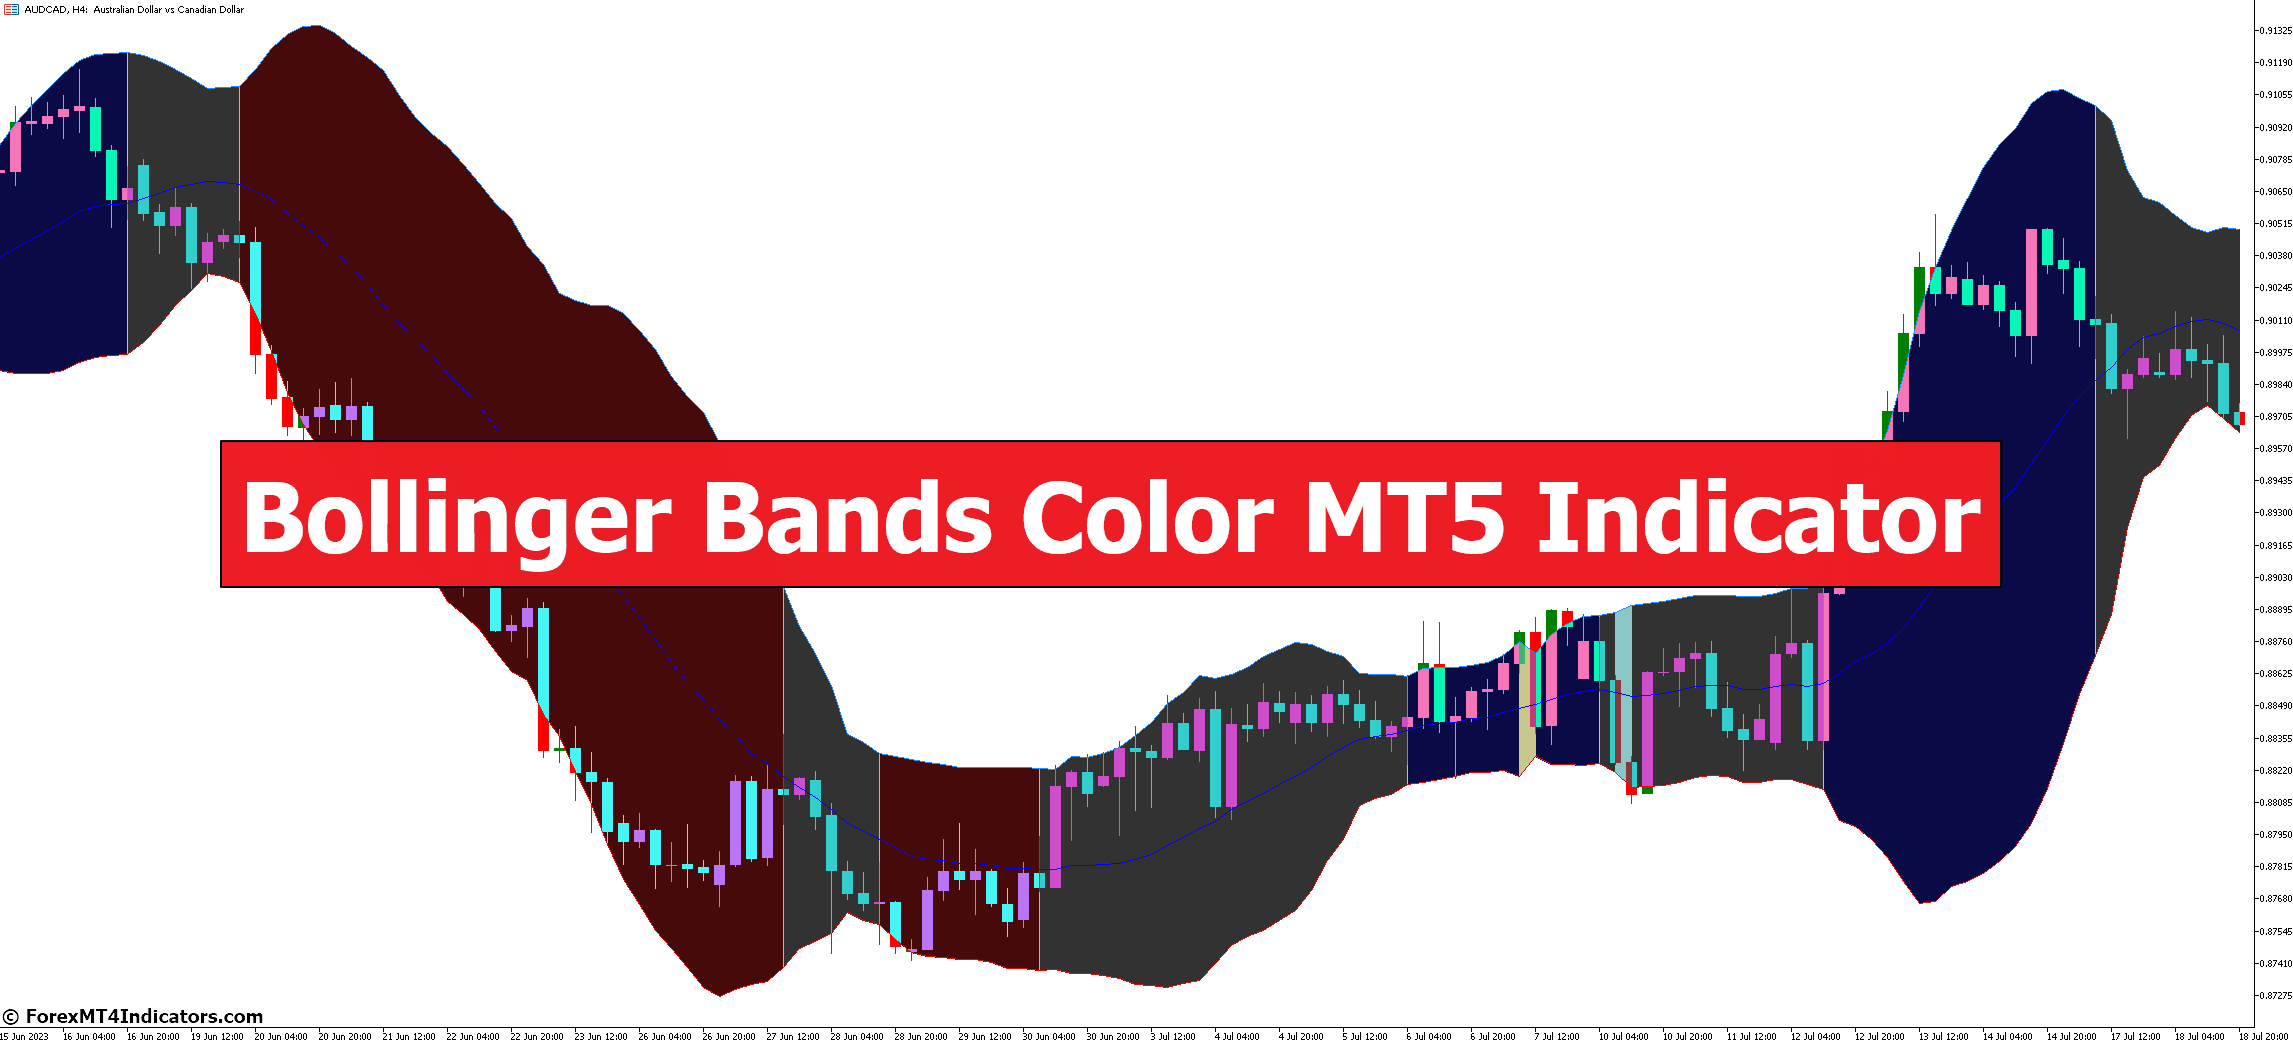 Bollinger Bands Color MT5 Indicator - ForexMT4Indicators.com